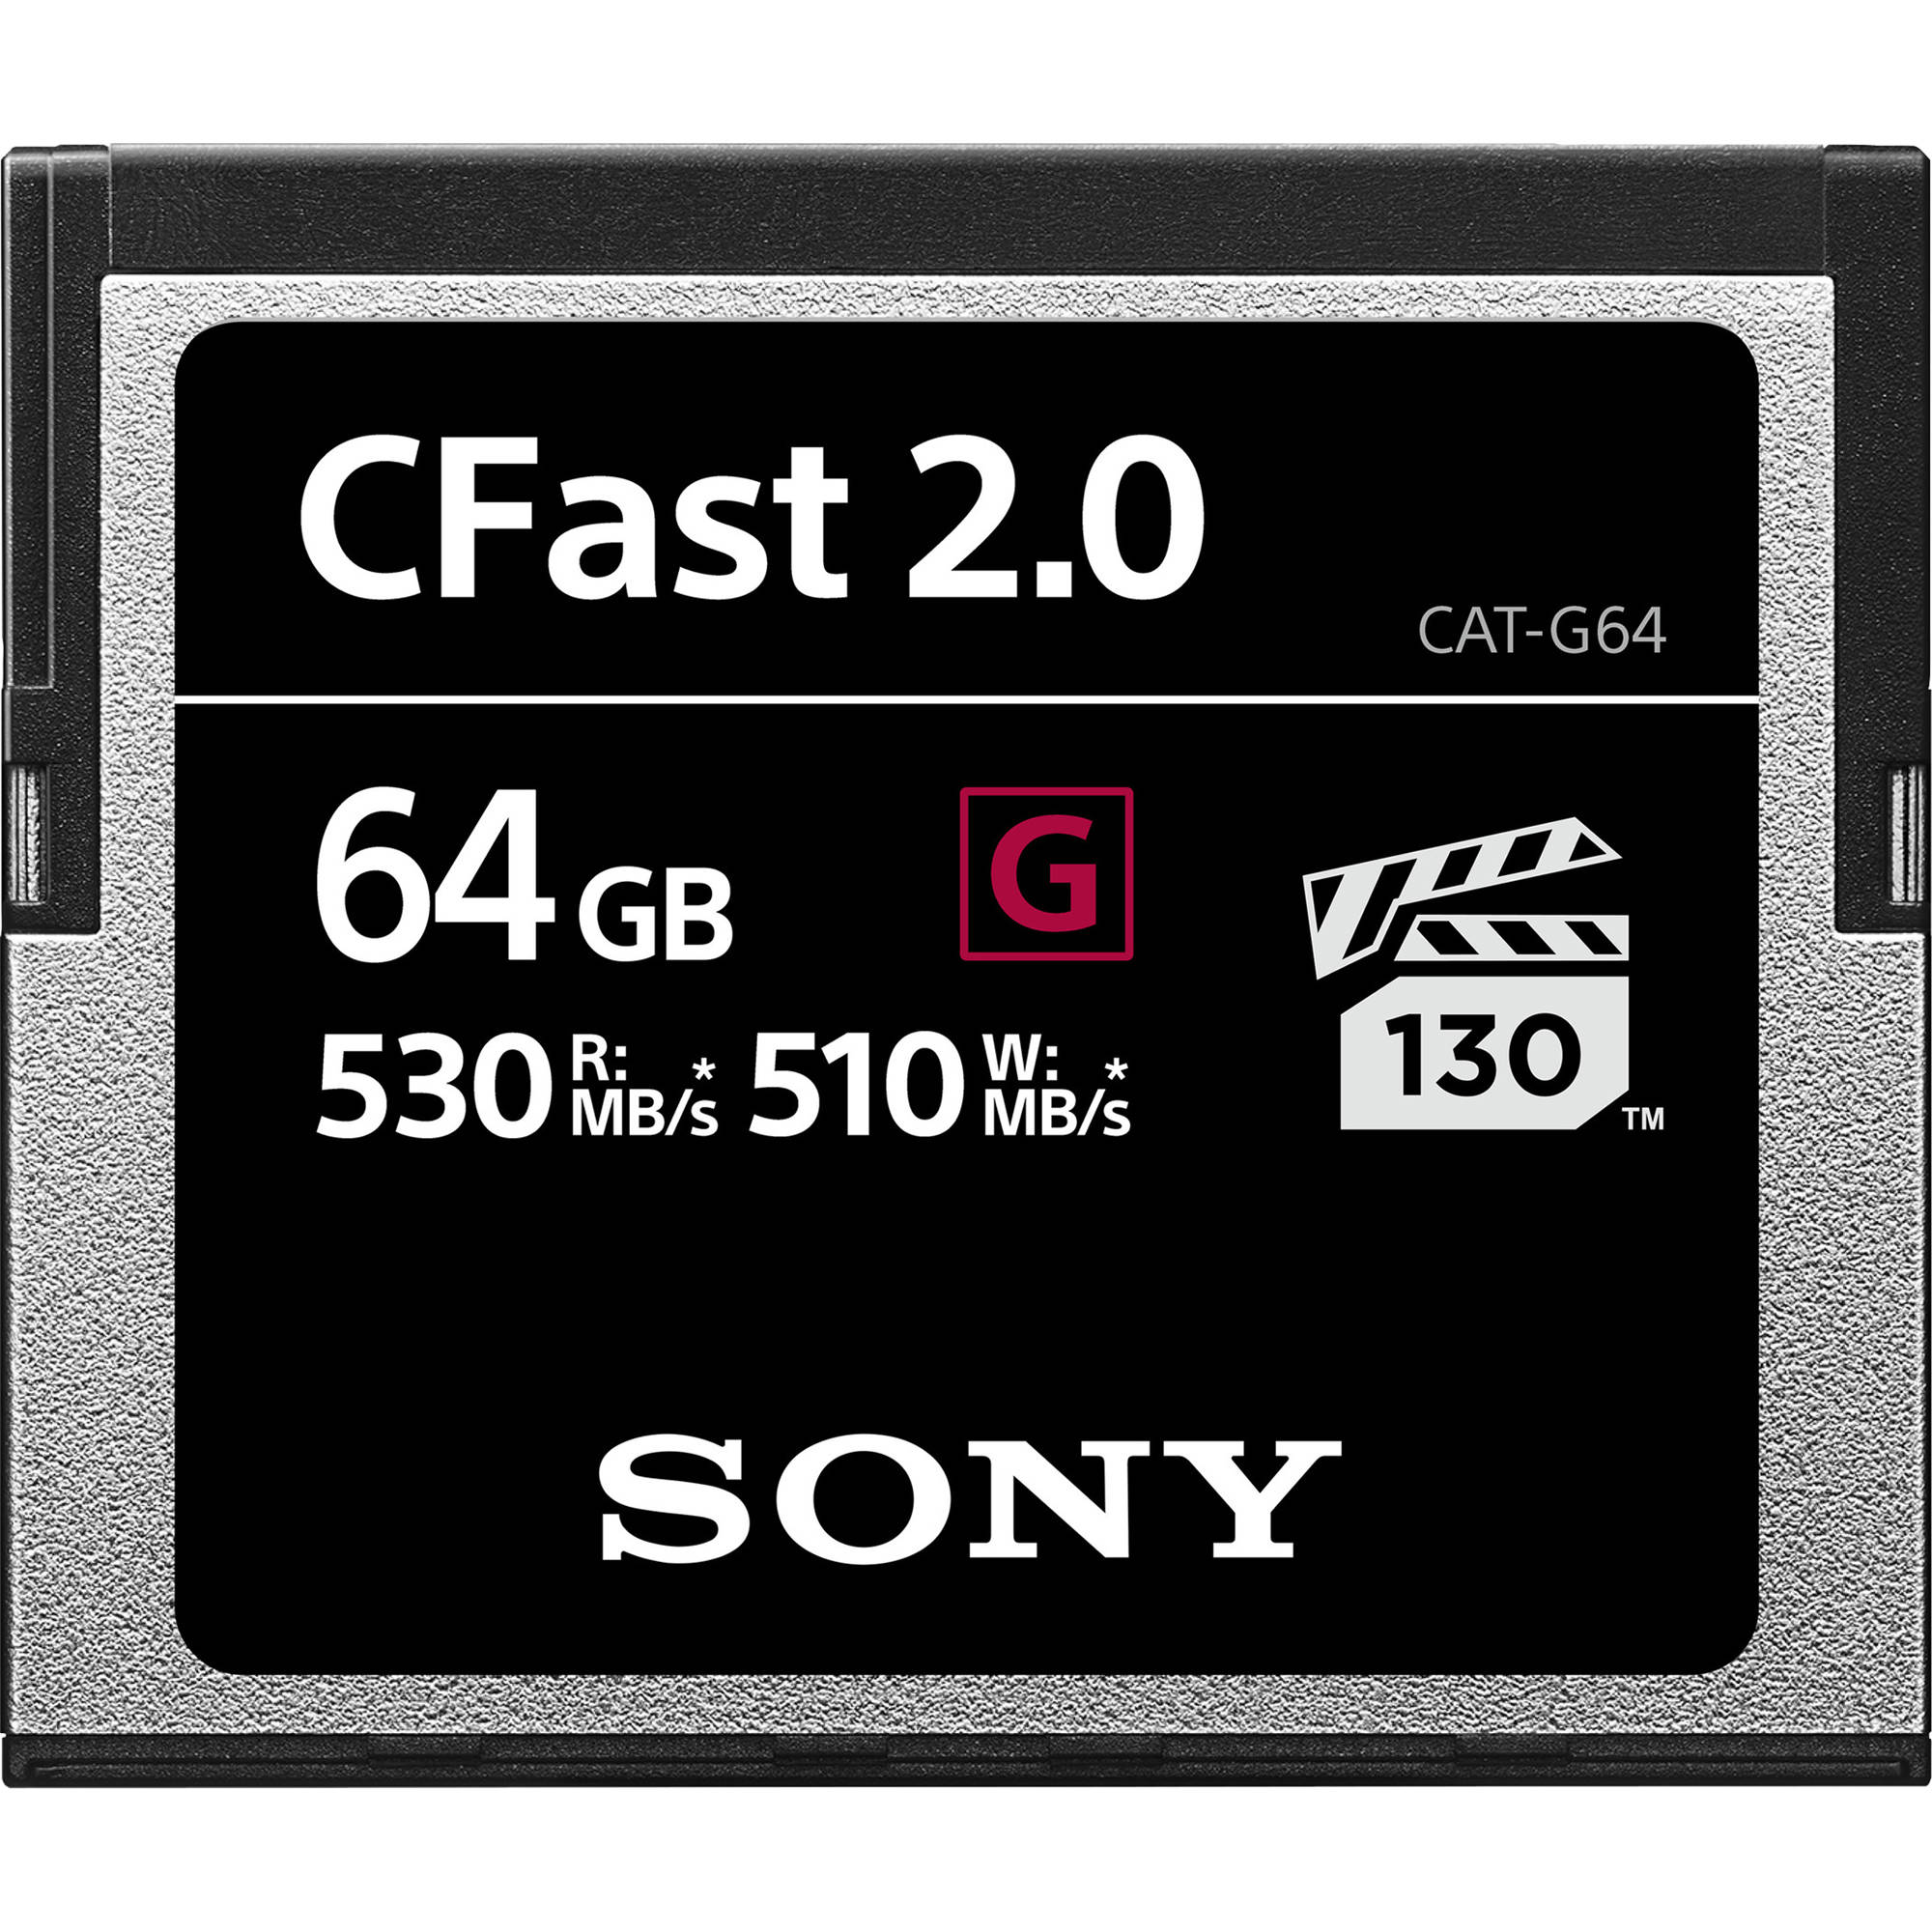 Куплю память sony. Карта памяти Sony 64 GB. Карта памяти Sony 32 GB. SANDISK extreme Pro 128gb CFAST 2.0. Карта памяти Sony Cat-g128.